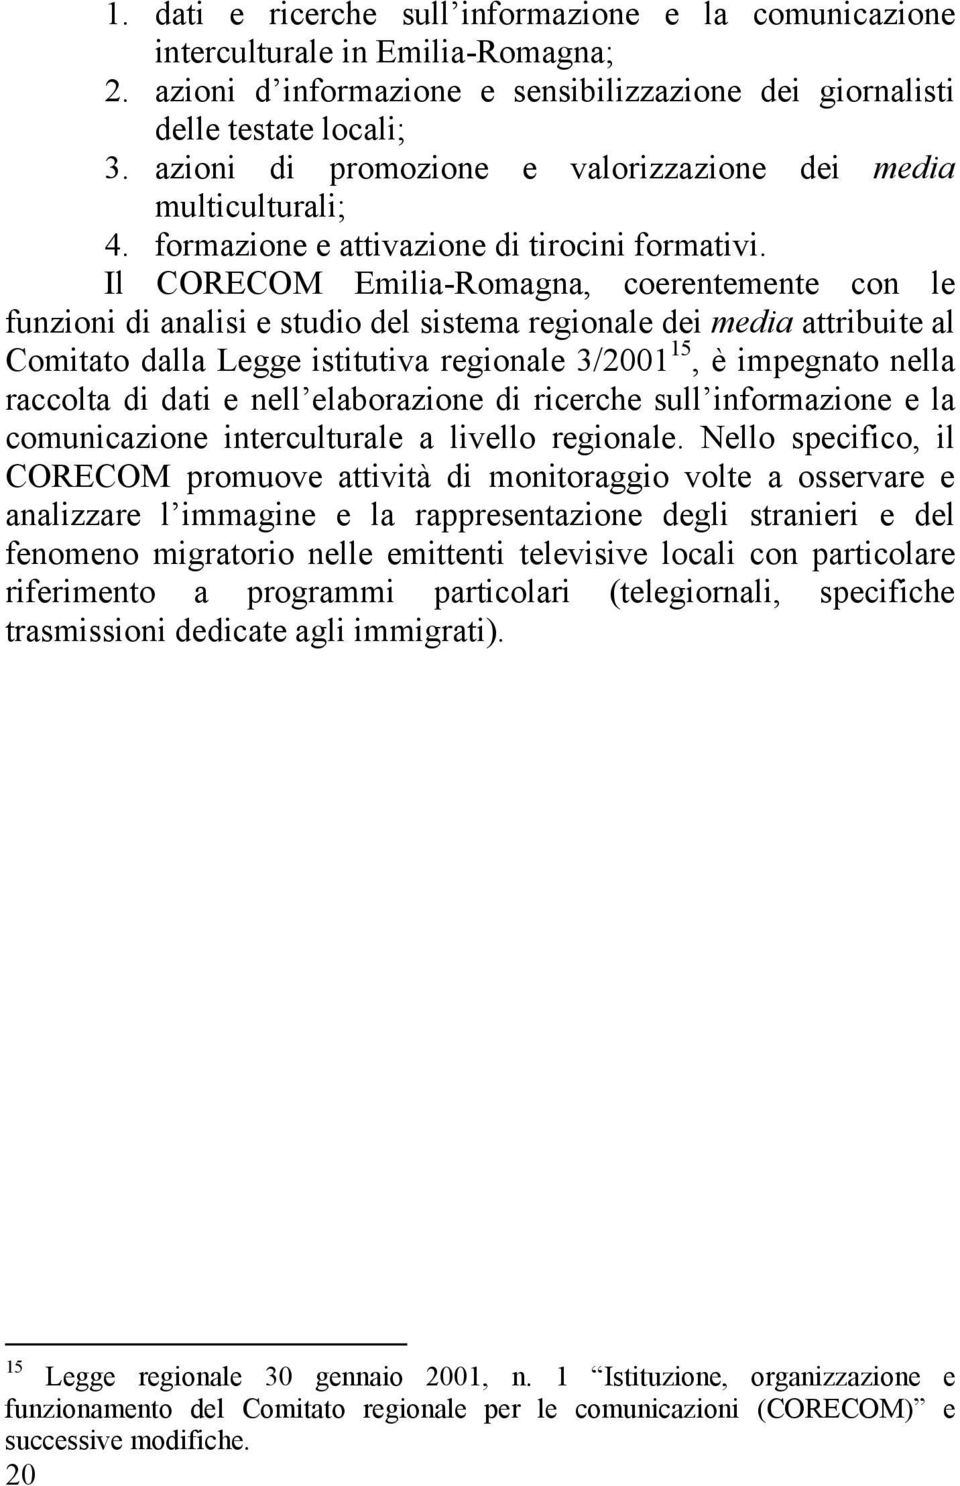 Il CORECOM Emilia-Romagna, coerentemente con le funzioni di analisi e studio del sistema regionale dei media attribuite al Comitato dalla Legge istitutiva regionale 3/2001 15, è impegnato nella